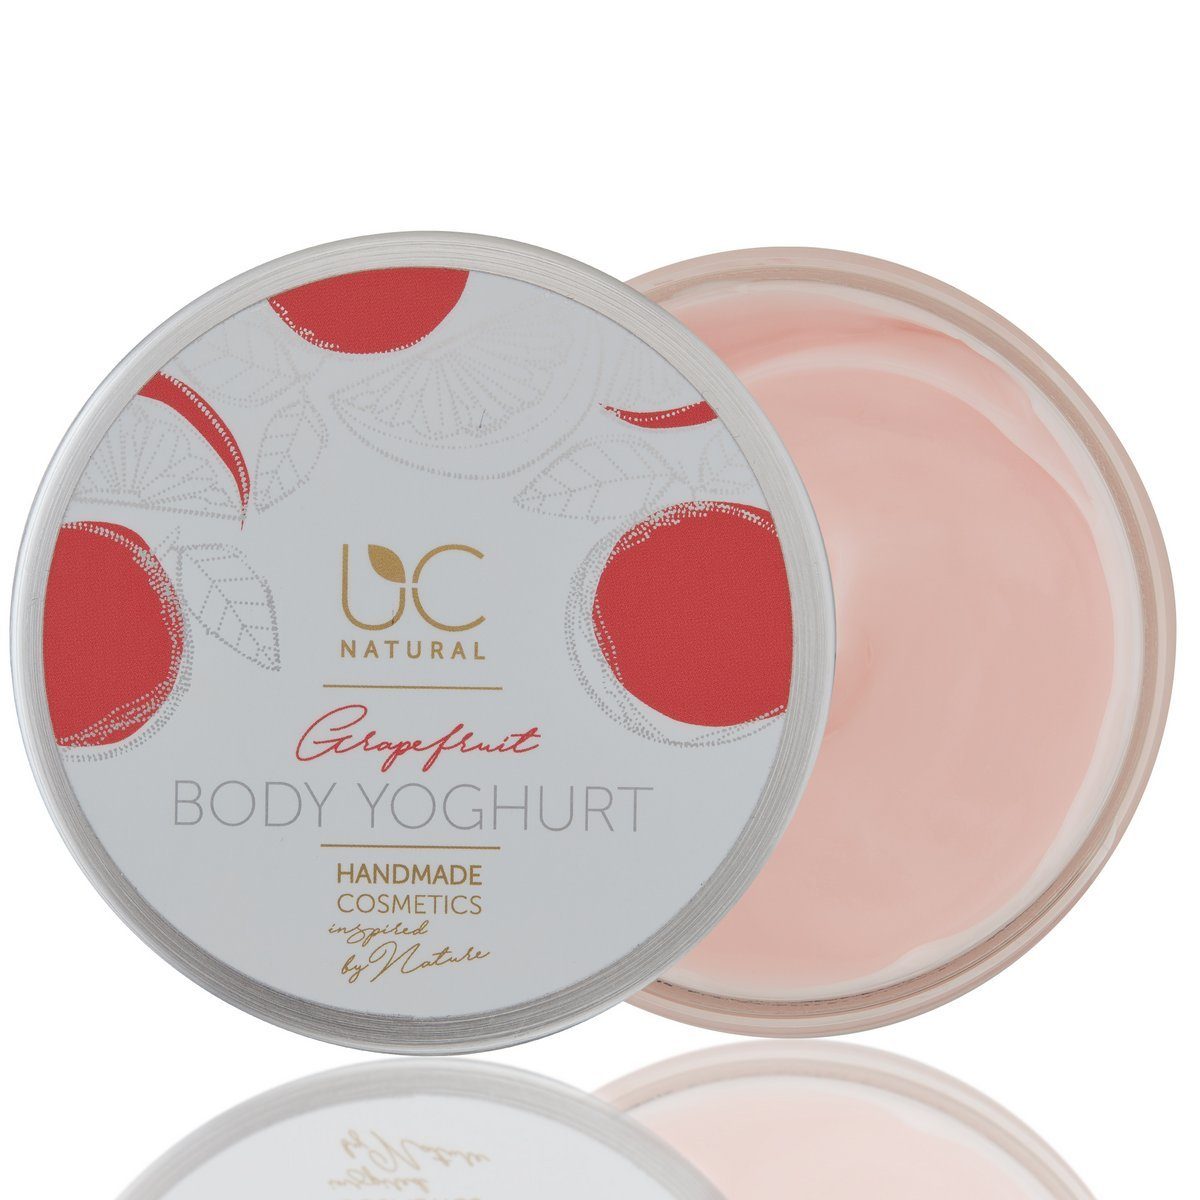 UC Natural Körpercreme handgemacht 1-tlg., vegan Natural UC Body Body Yoghurt 220g Grapefruit Yoghurt Set